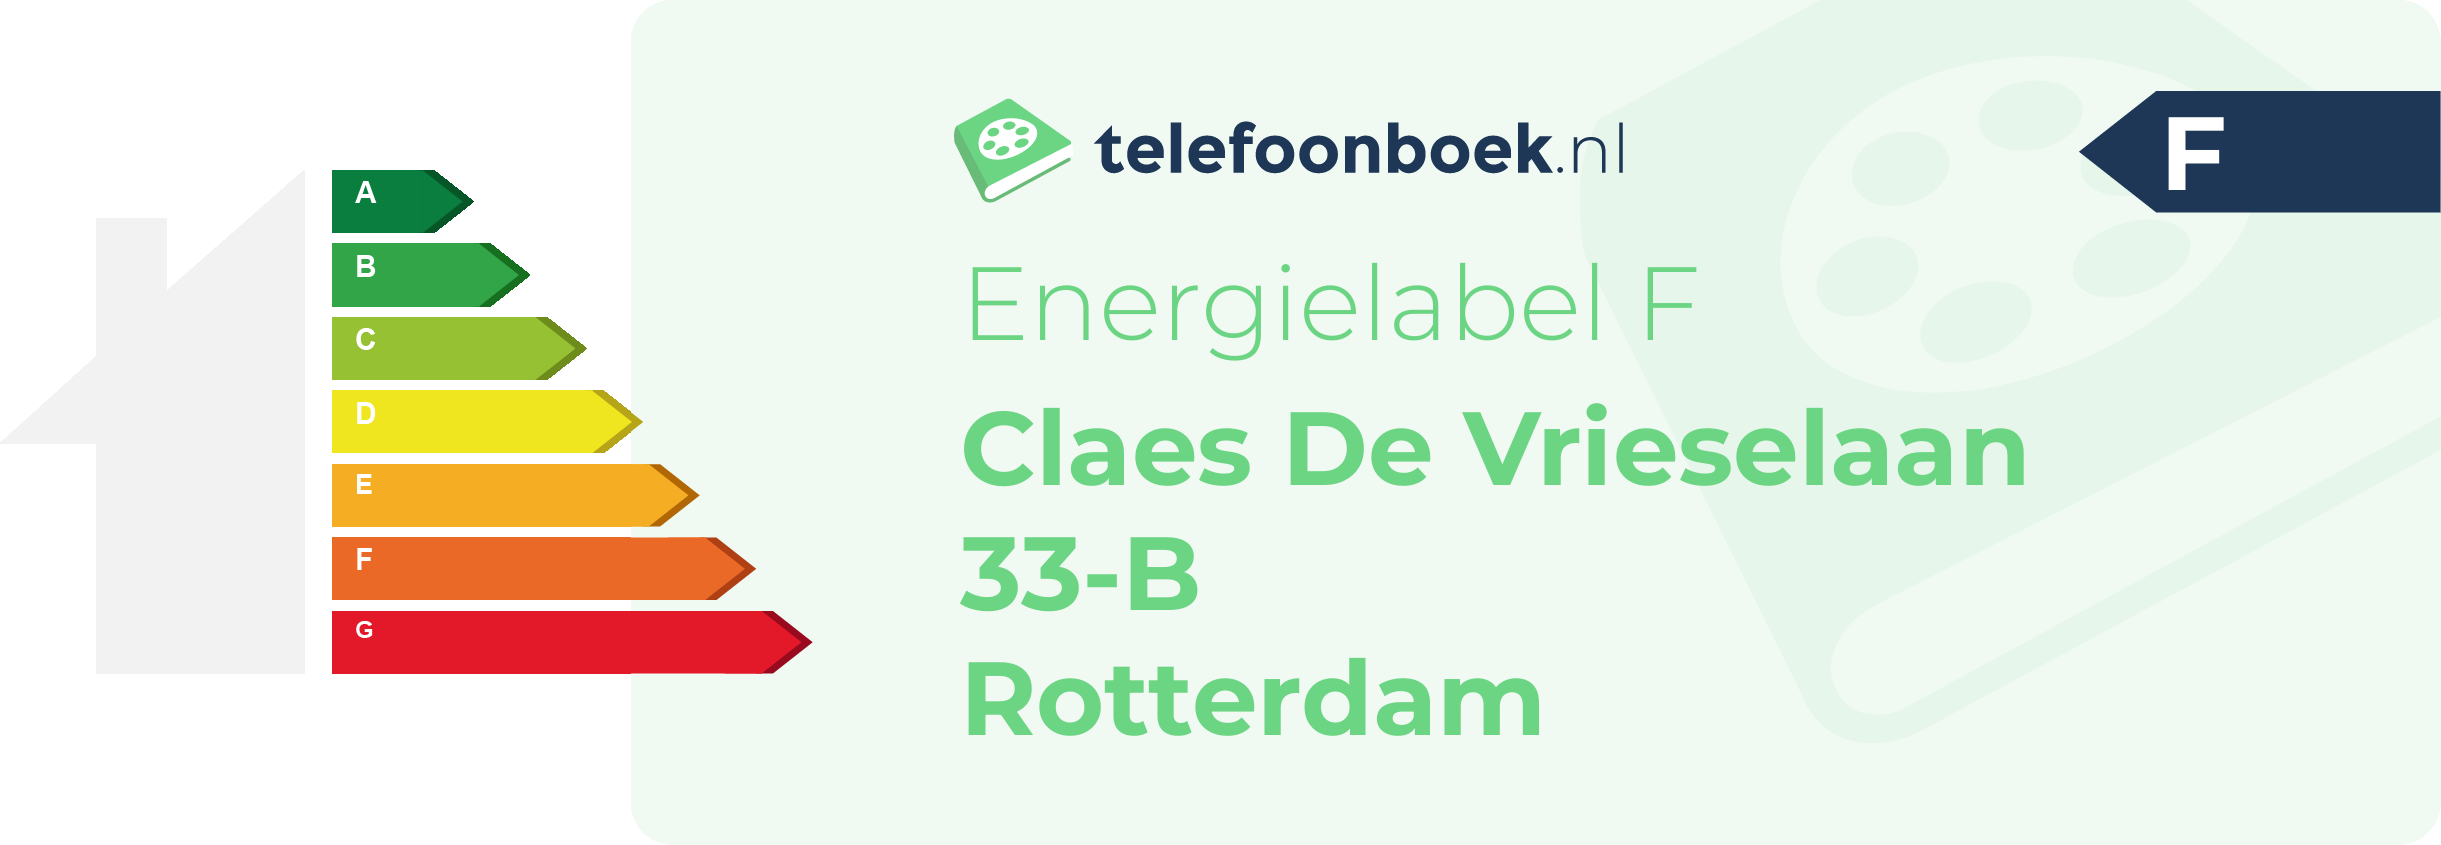 Energielabel Claes De Vrieselaan 33-B Rotterdam